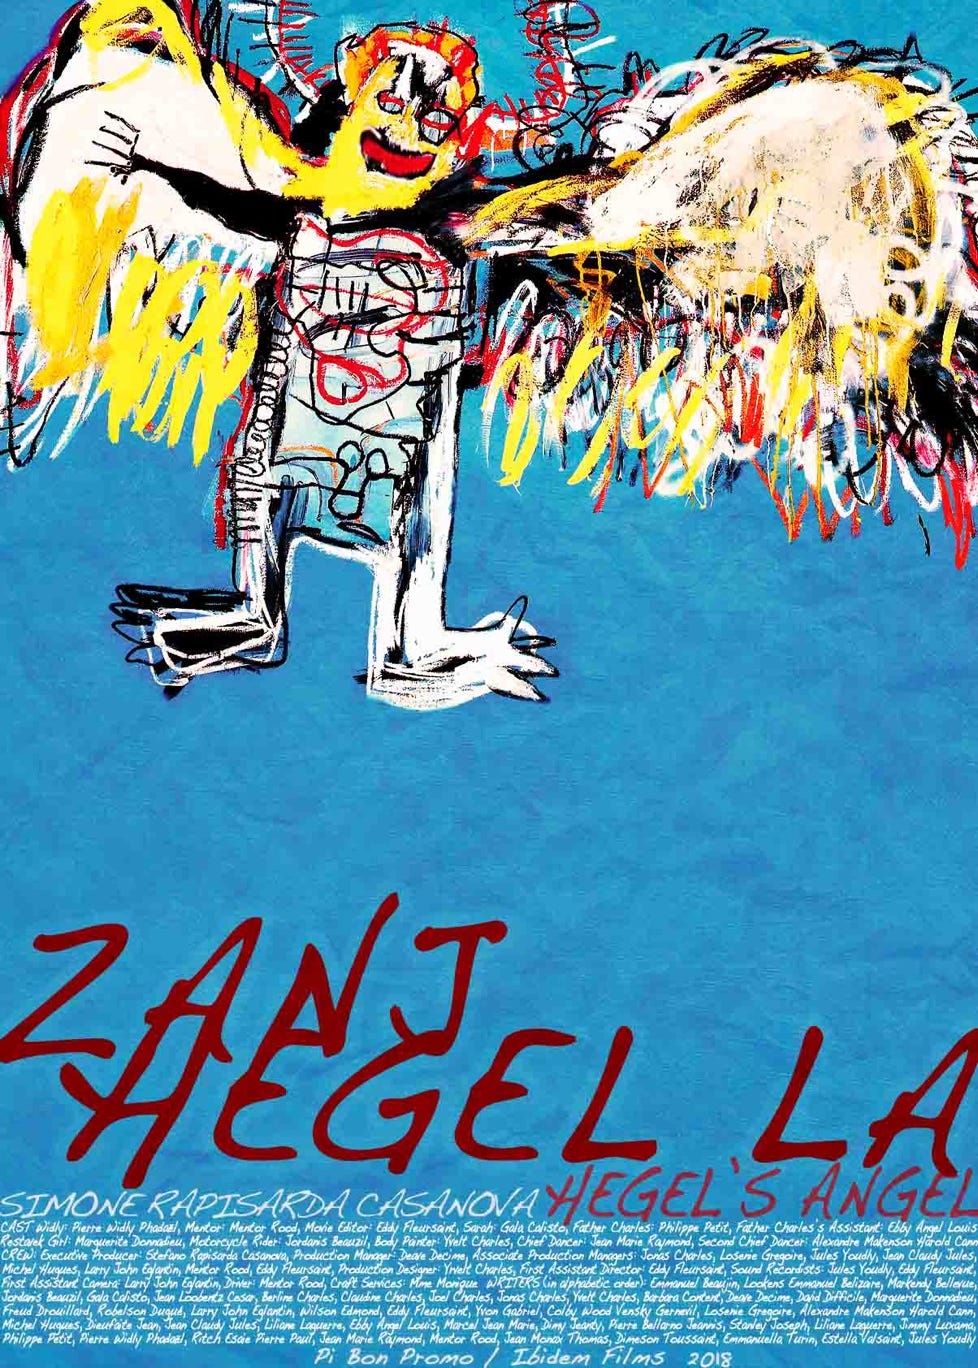 ZANJ HEGEL LA (HEGEL’S ANGEL) film poster